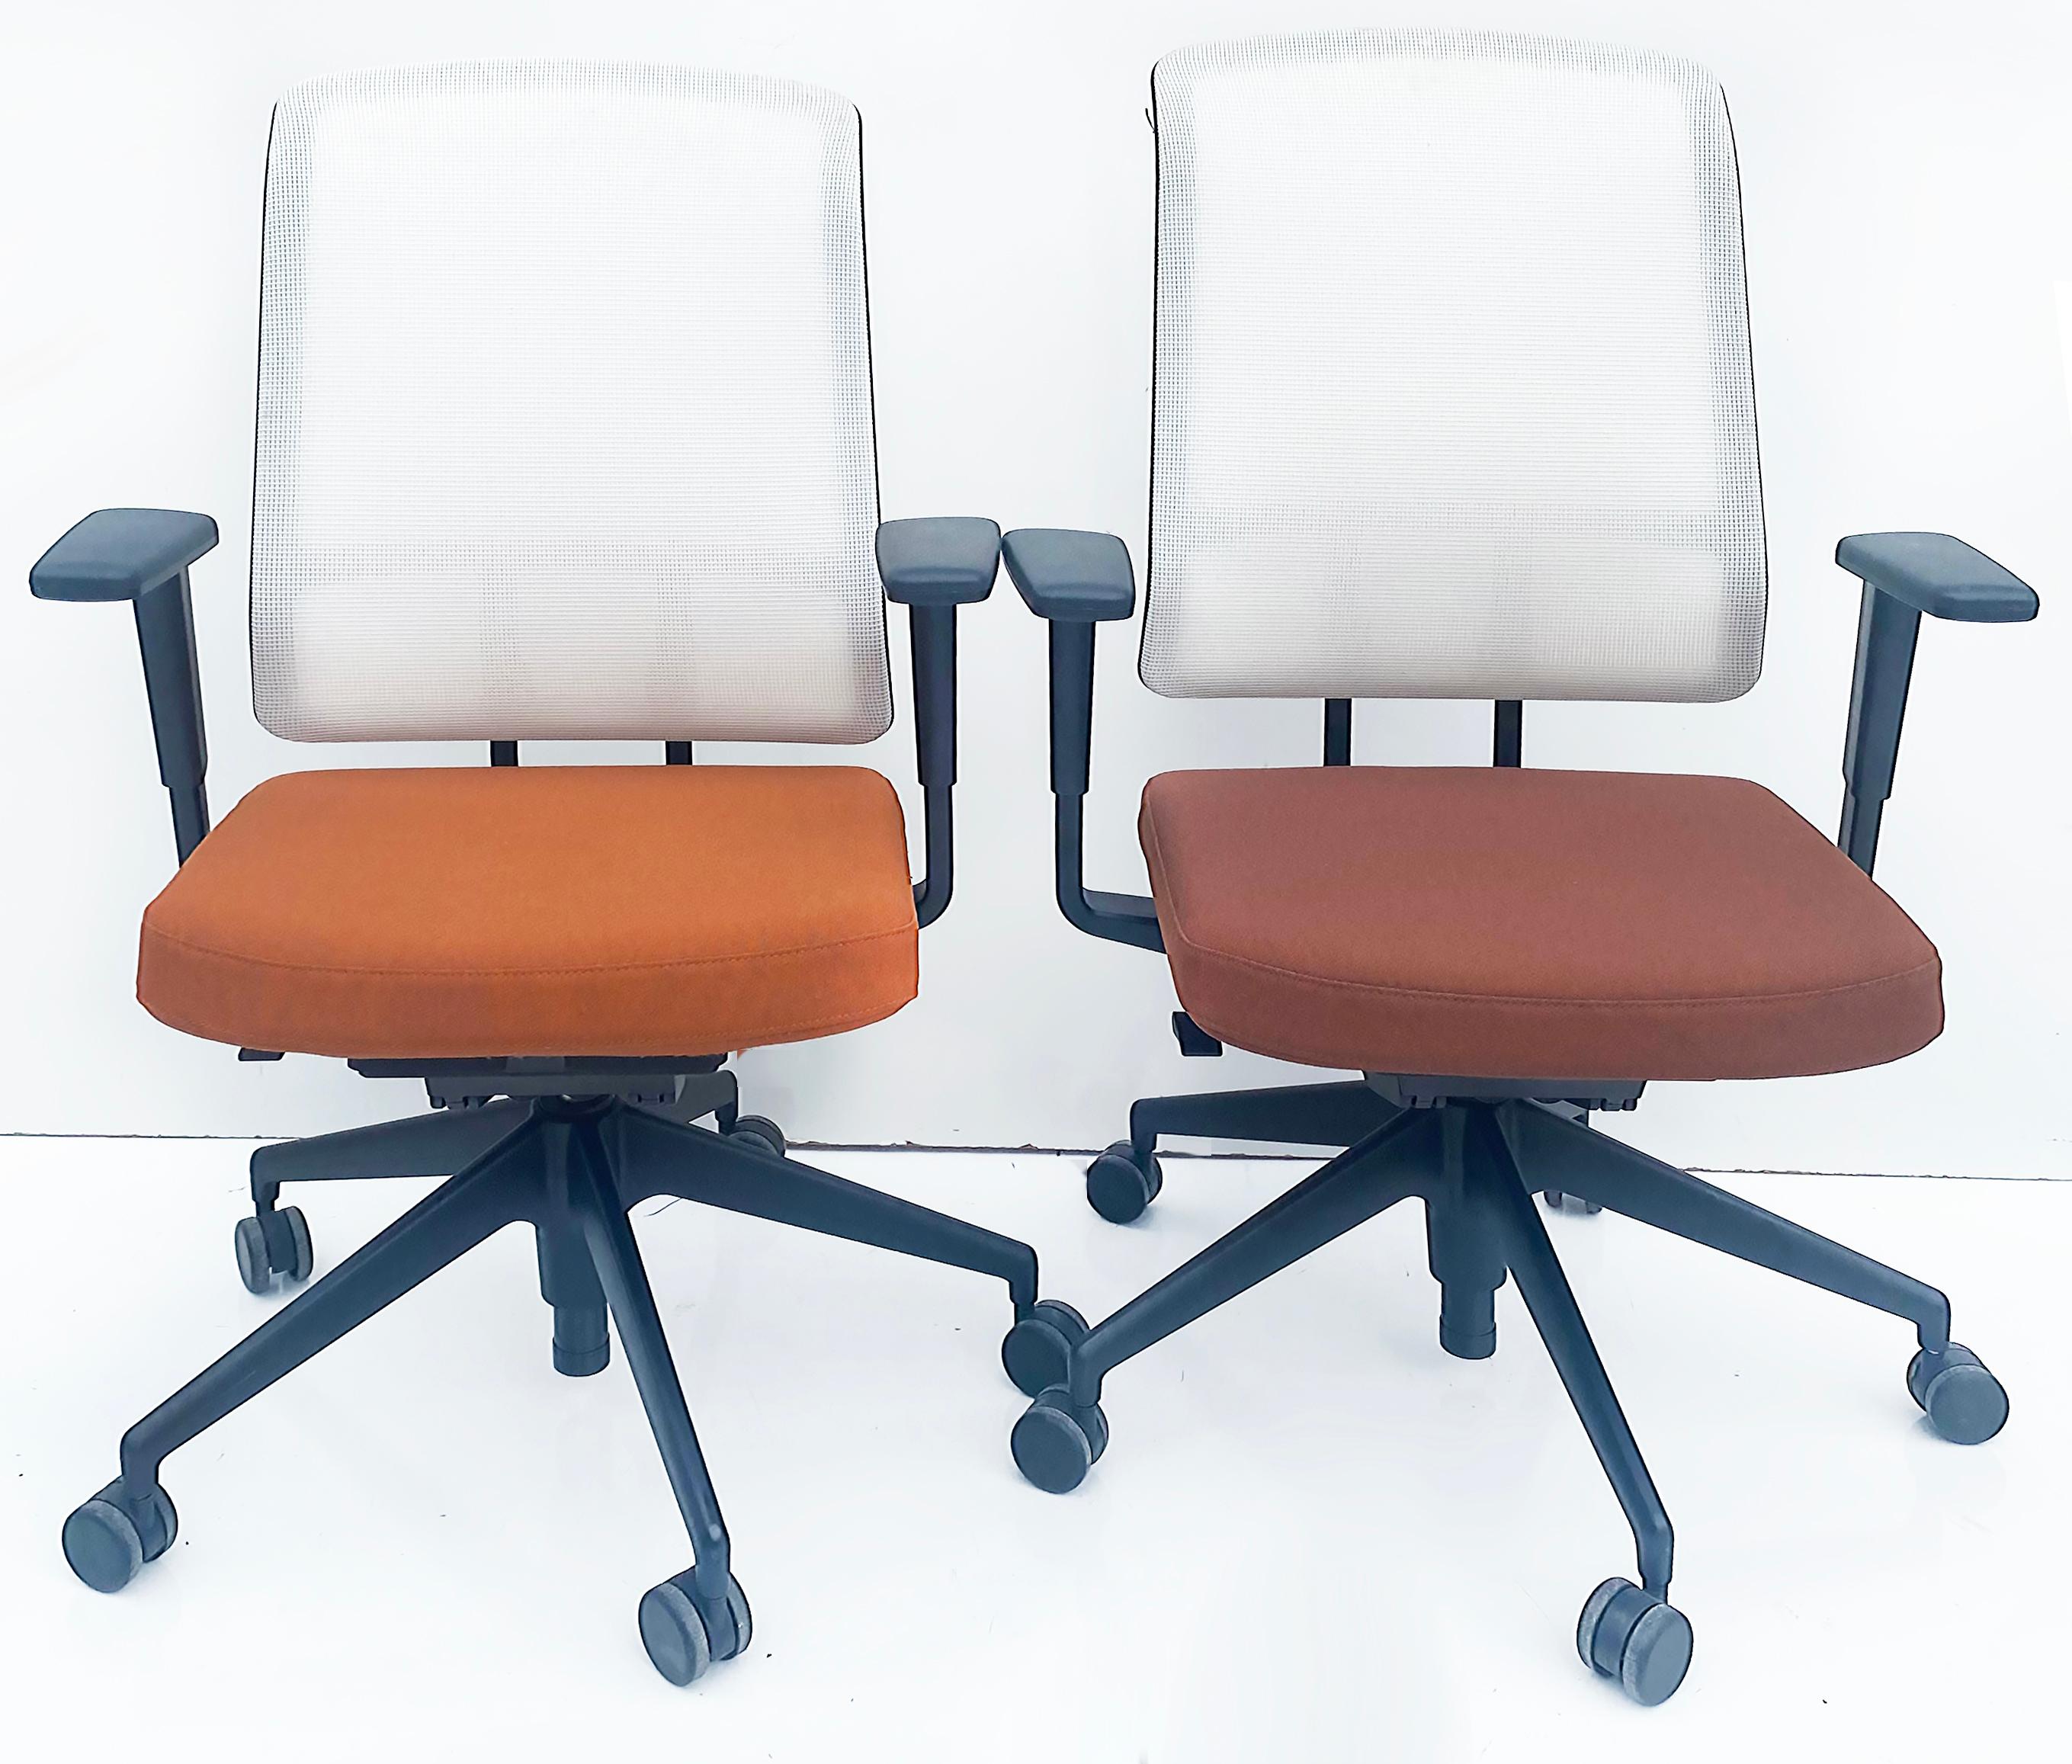 Vitra AM Vollständig verstellbare ergonomische Bürostühle von Alberto Meda 2021

Zum Verkauf angeboten werden sechs voll verstellbare, ergonomische Bürostühle Vitra AM, entworfen von Alberto Meda und hergestellt von Vitra in Deutschland.  Sie werden